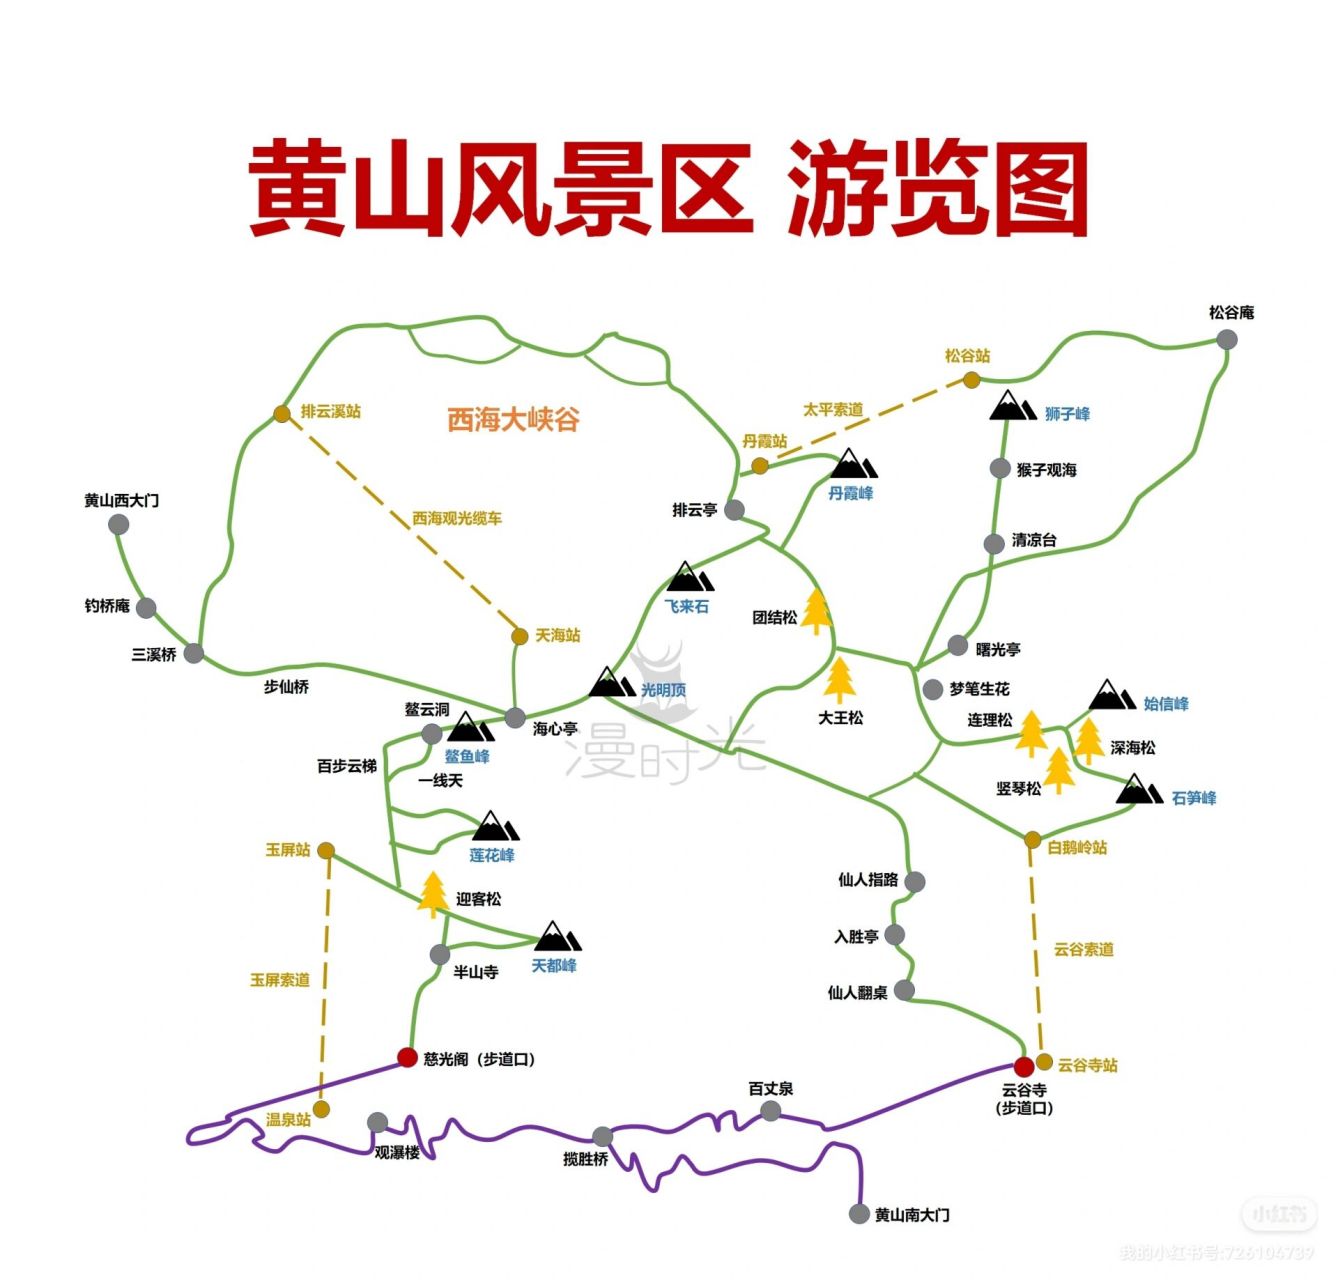 黄山旅游景点地图       最近很多宝贝私信我问旅游地图,交通攻略